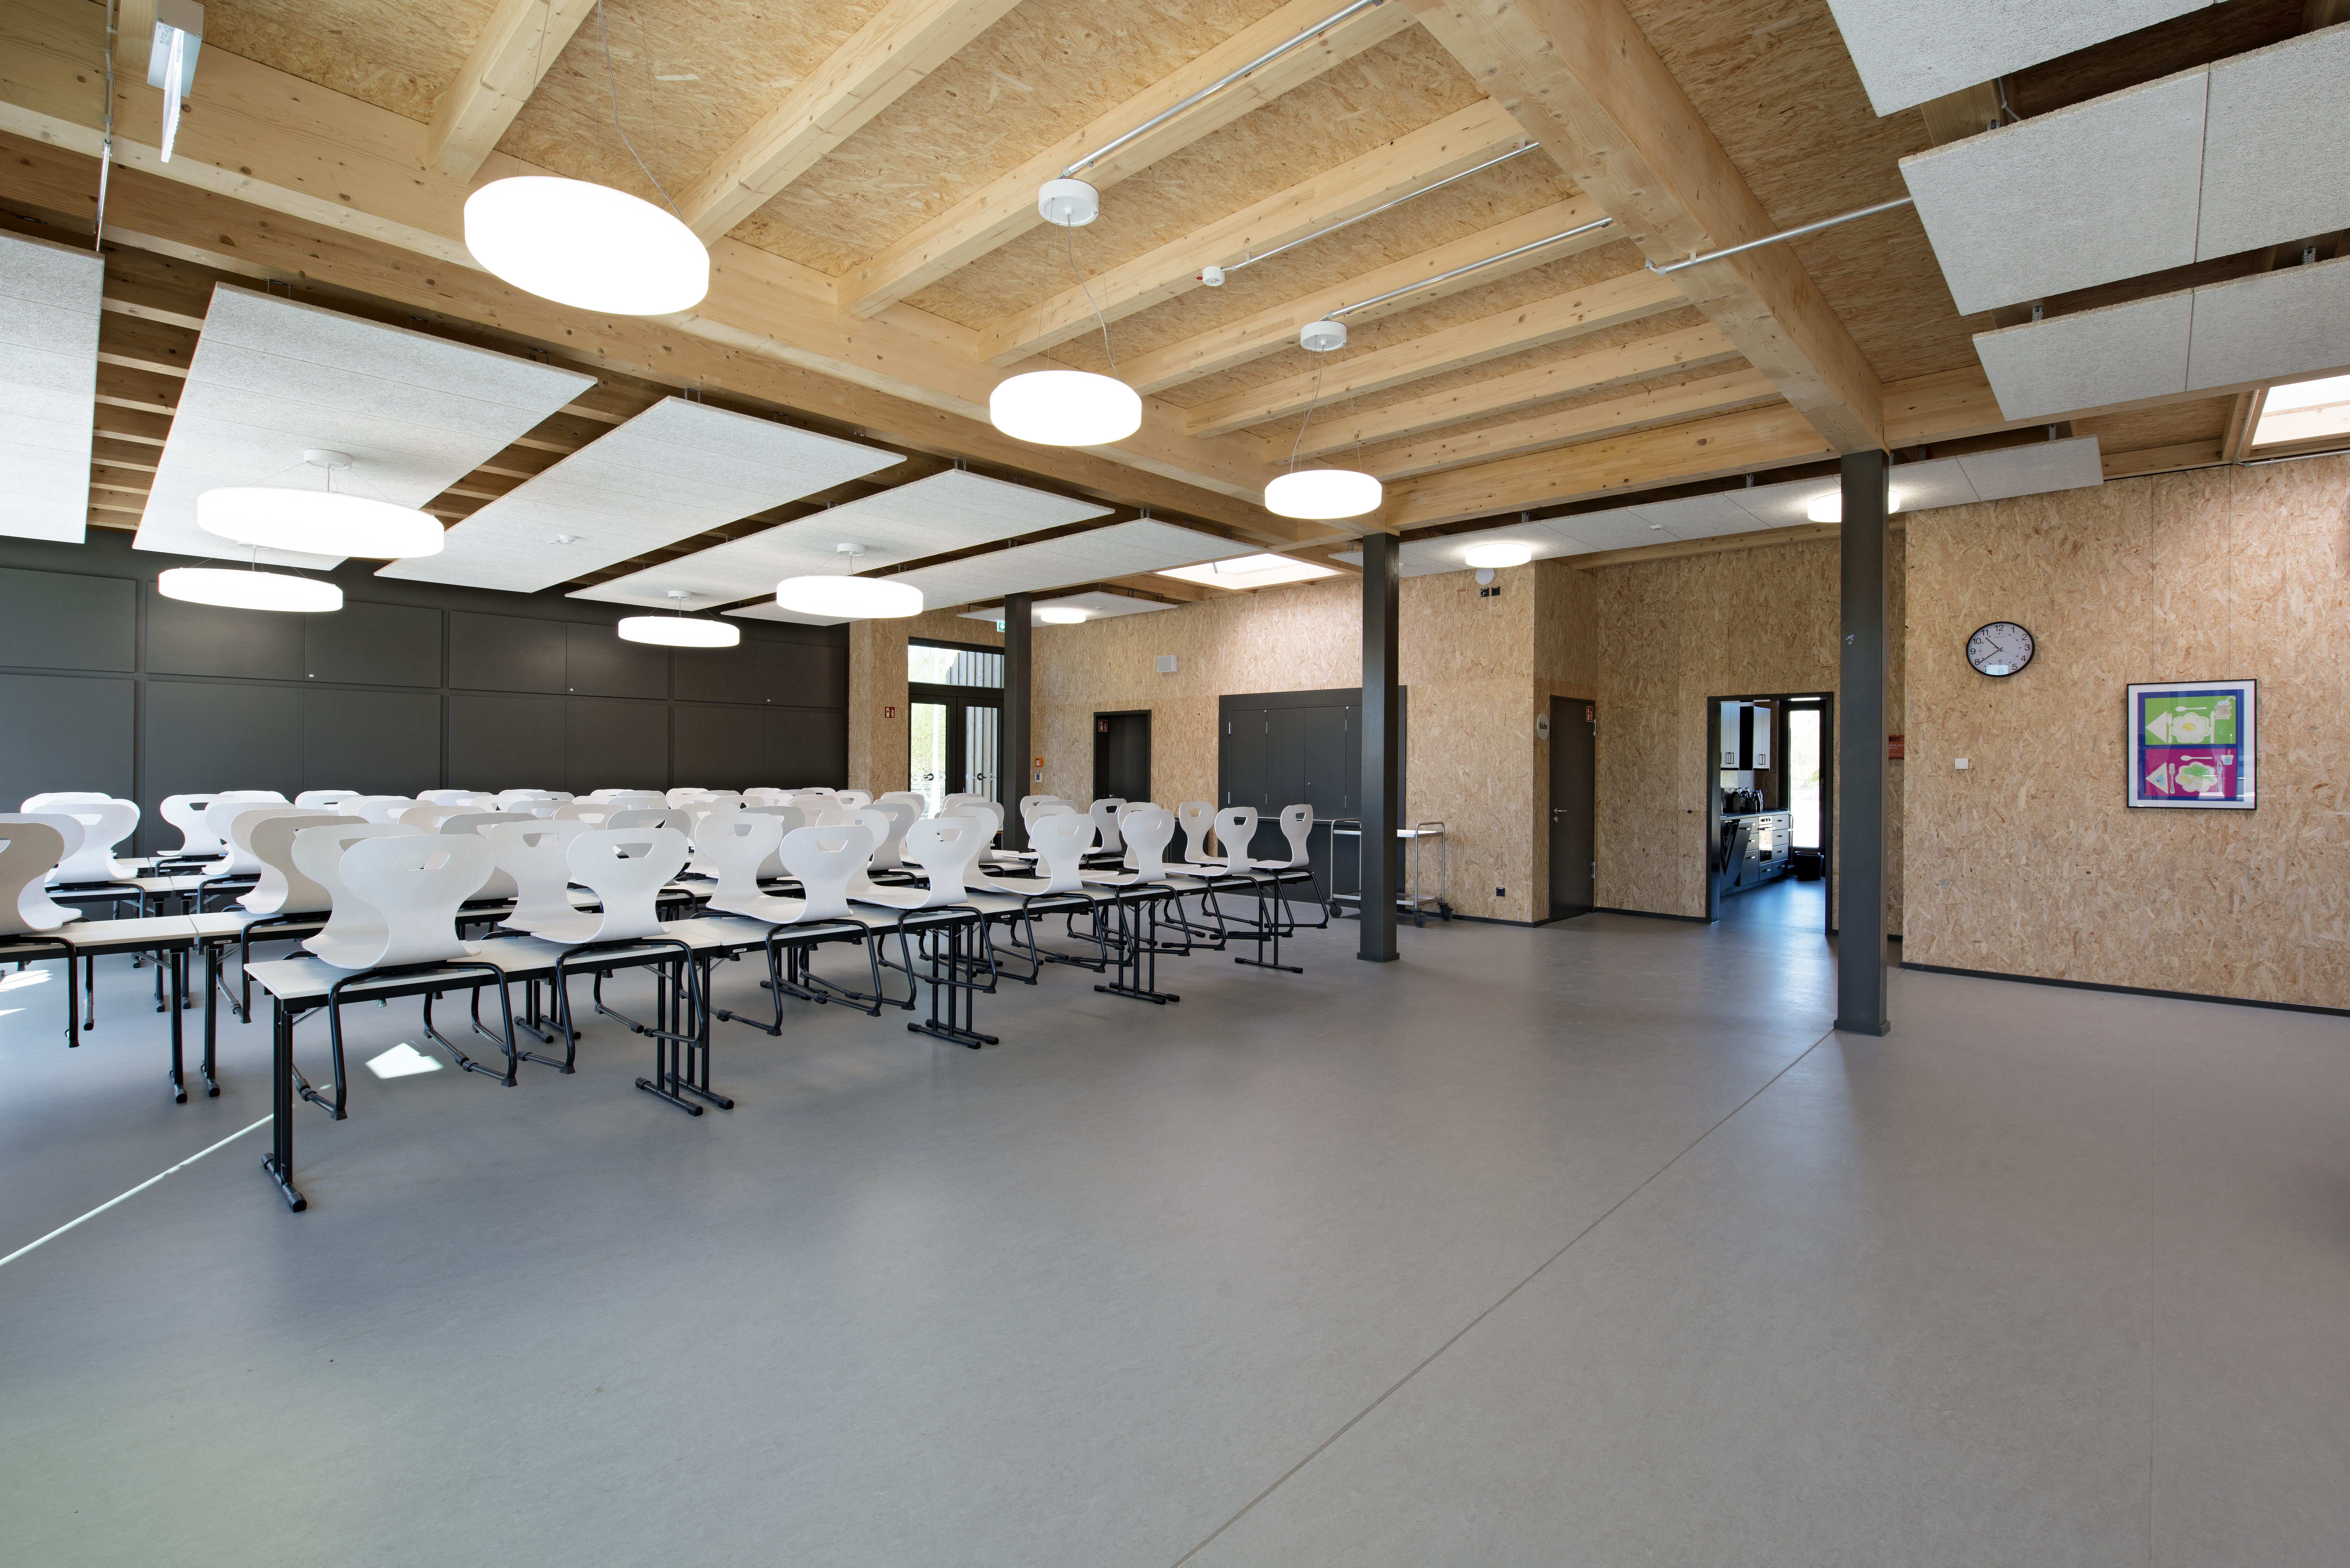 Нова будівля школи ім. Роберта Ланземанна у м. Вісмар Автор фотографії: © Jana Sprockhoff